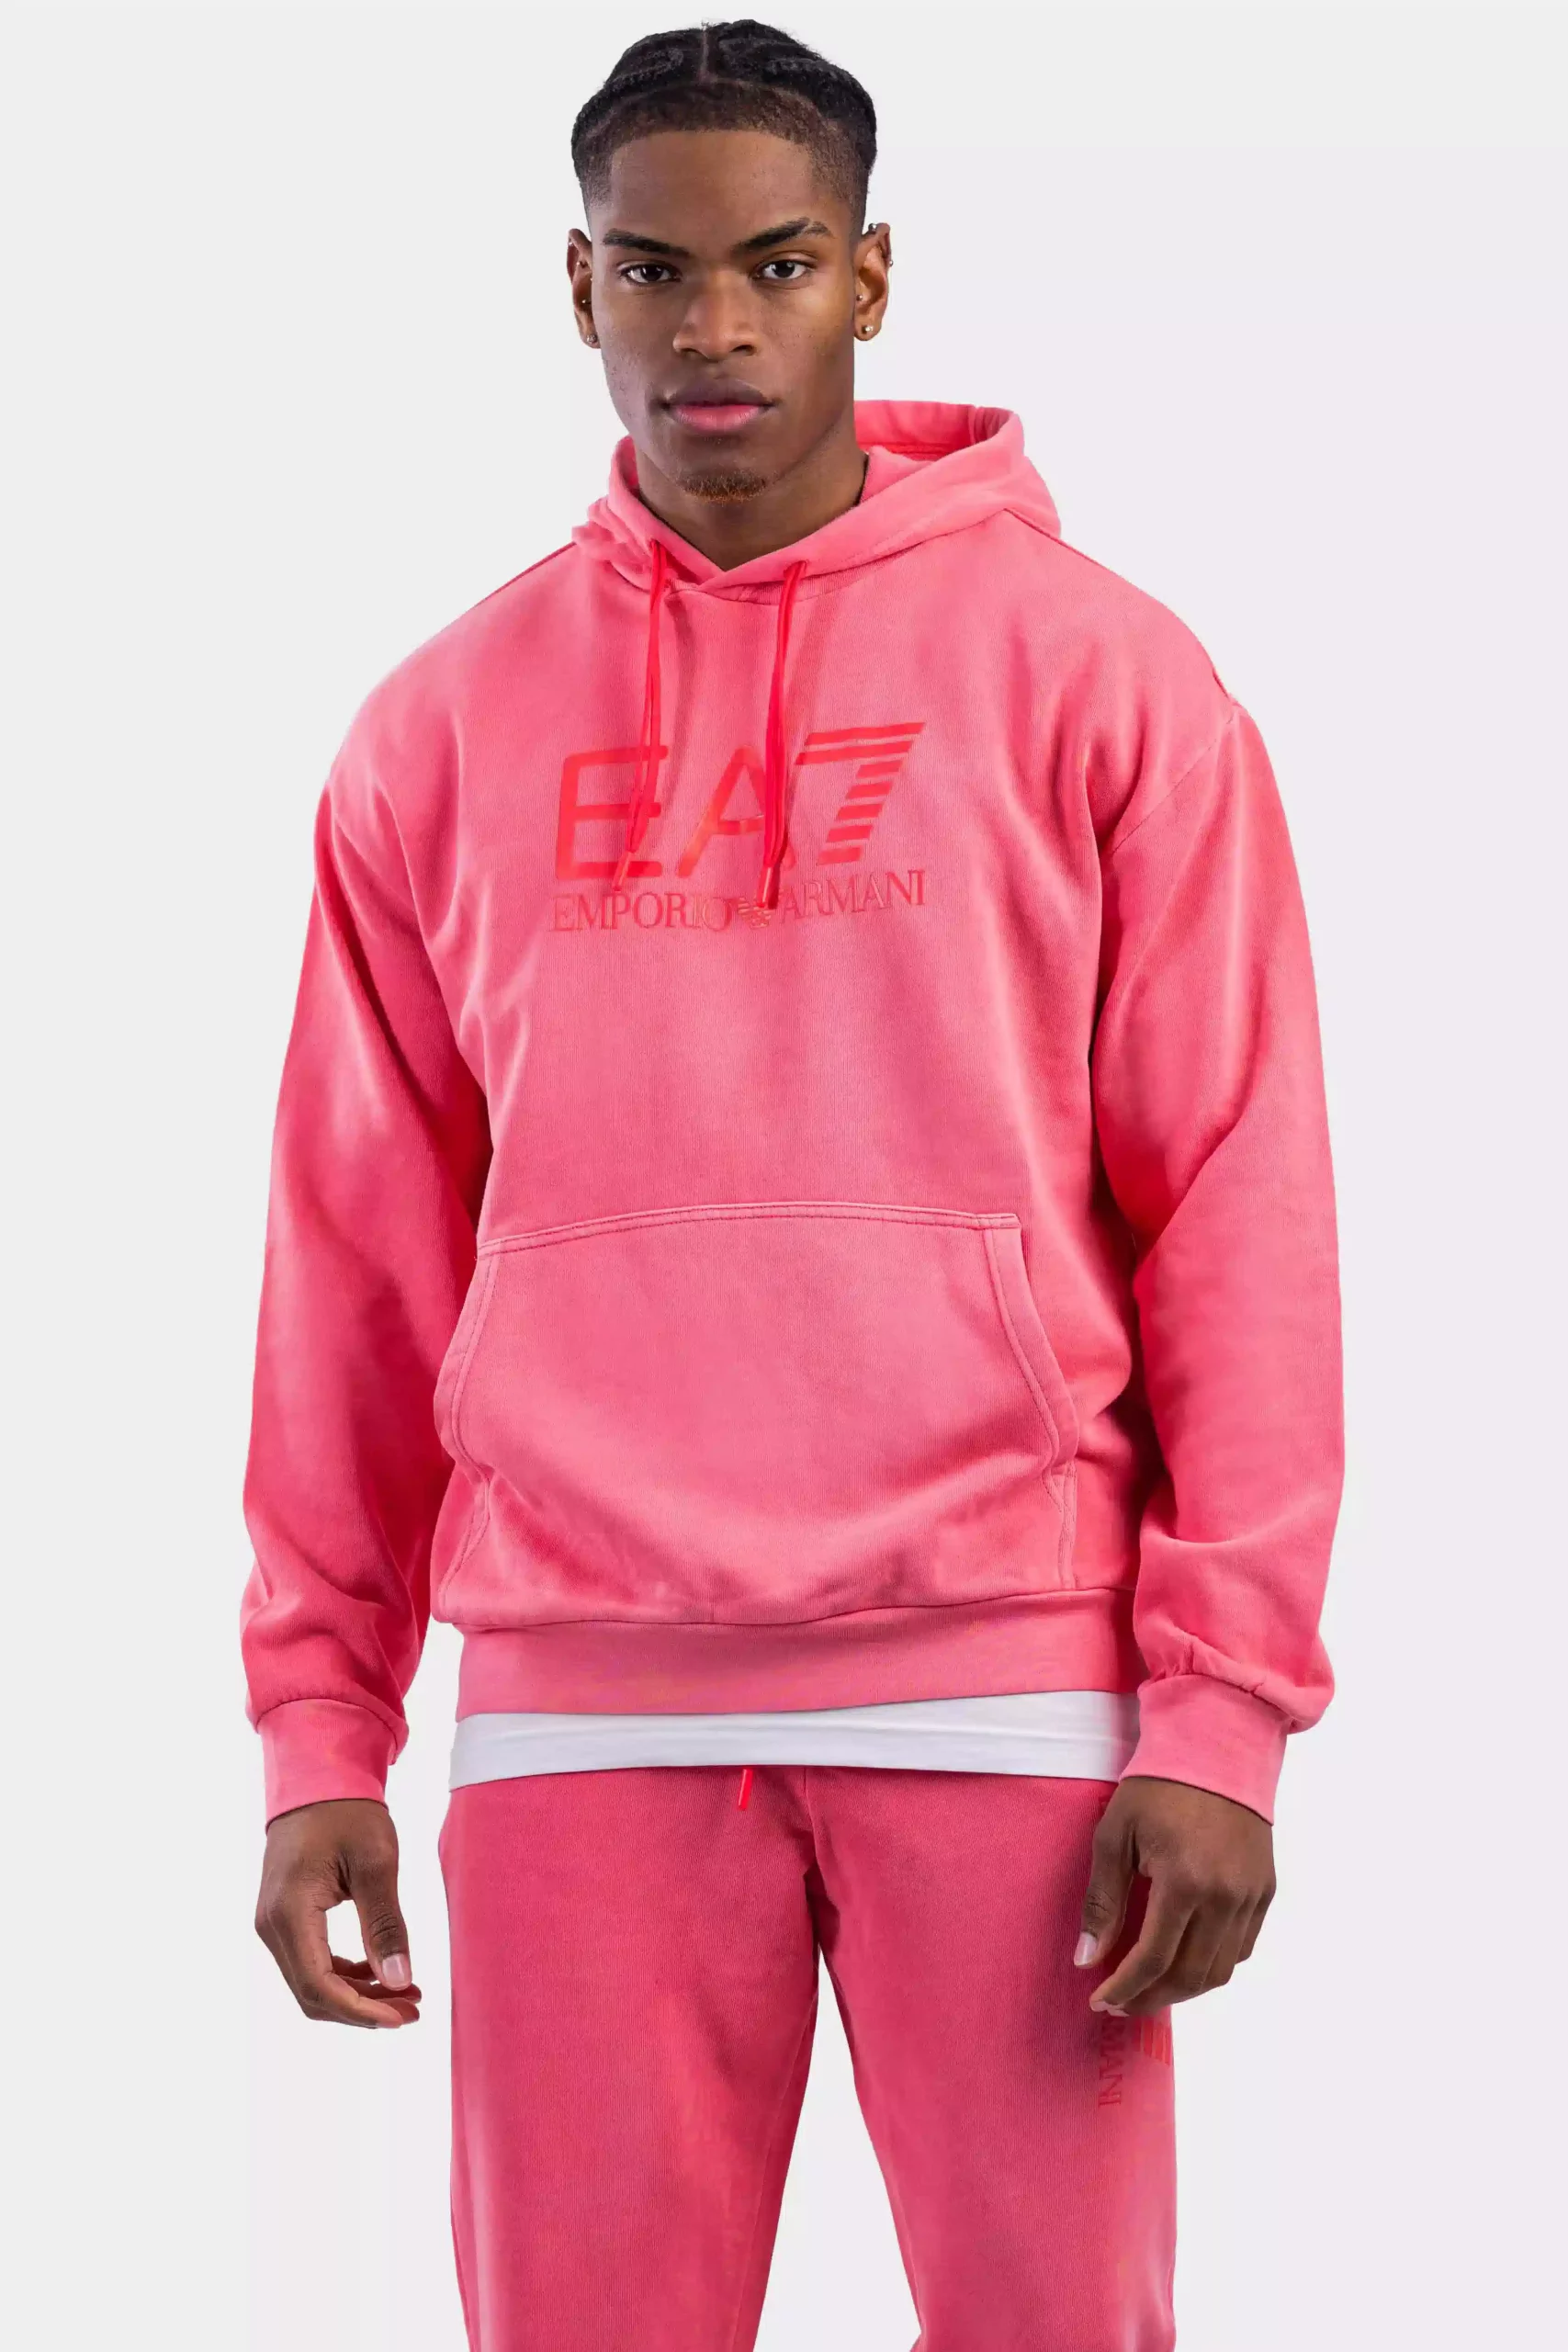 zingen ga zo door Wanten EA7 Emporio Armani Big Logo Hooded Trainingspak Heren Roze Heren shoppen? |  Soccerfanshop BE